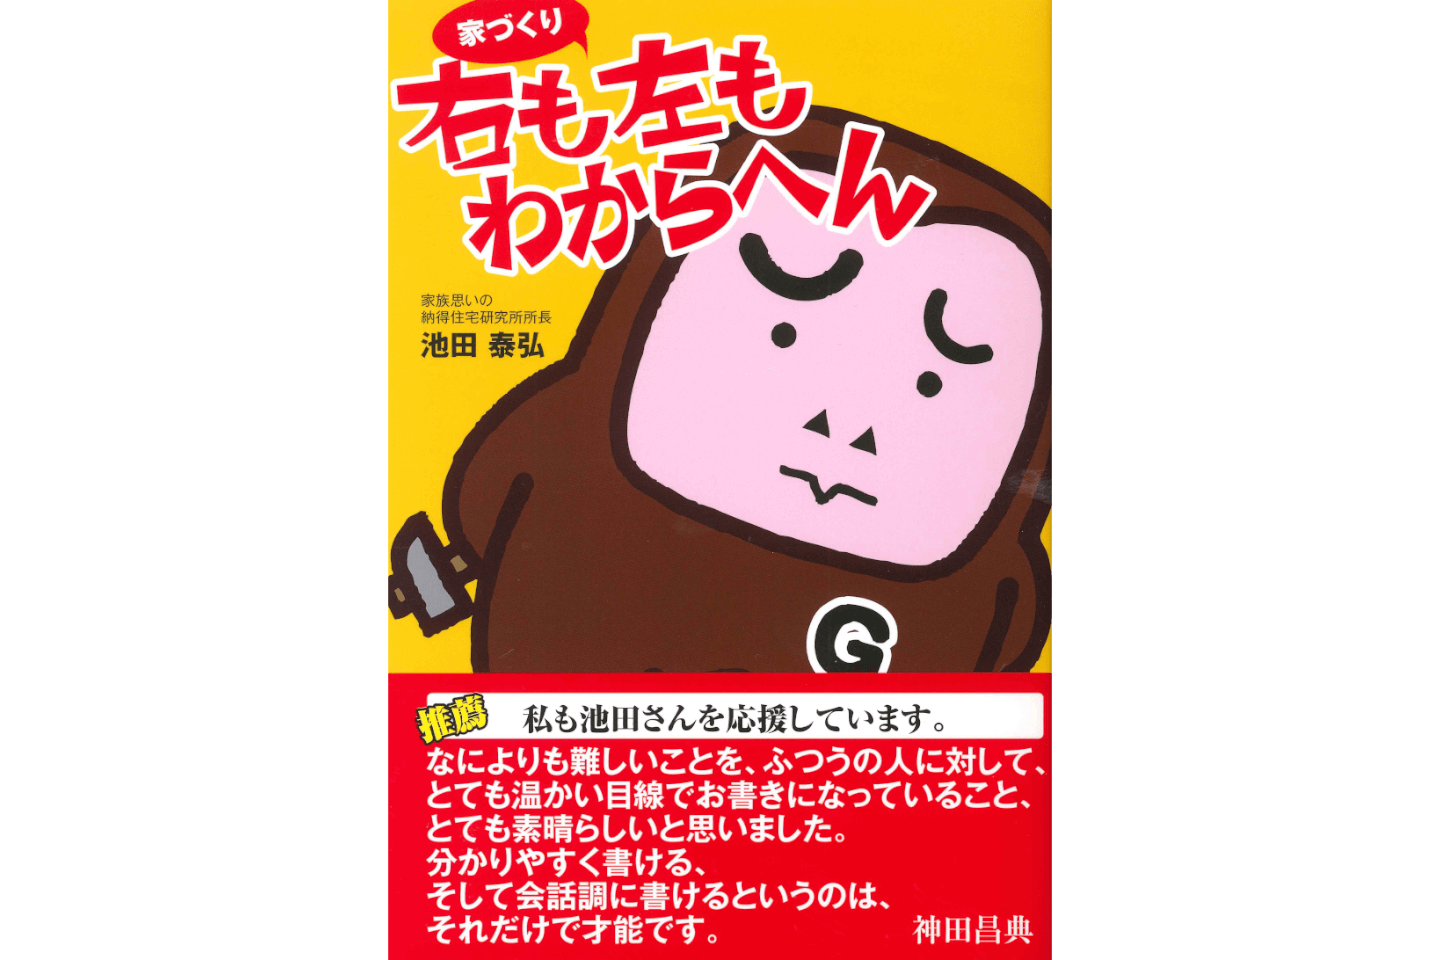 大阪日日新聞にて、代表取締役社長 池田泰弘の著書「家づくり 右も左もわからへん」の記事が掲載されました。